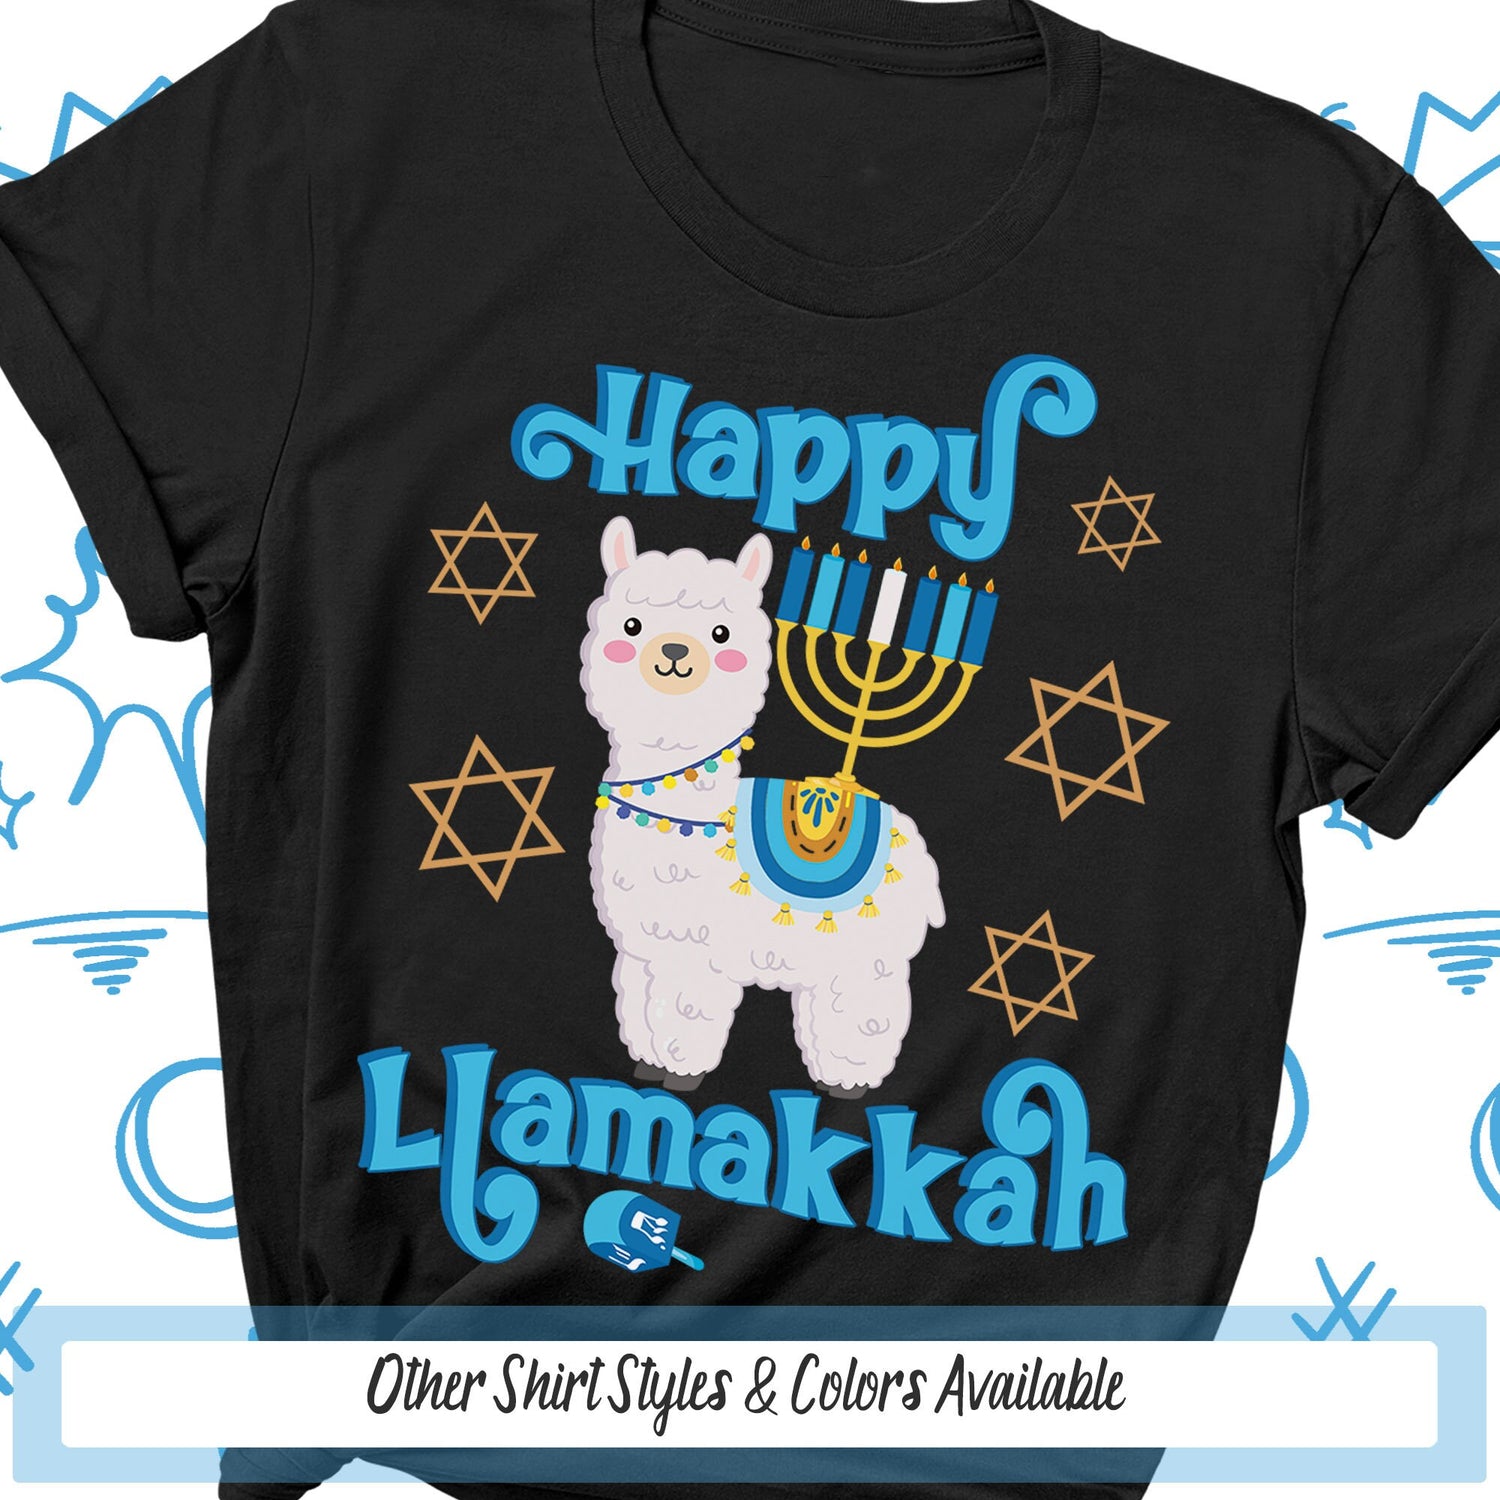 Hanukkah Shirts